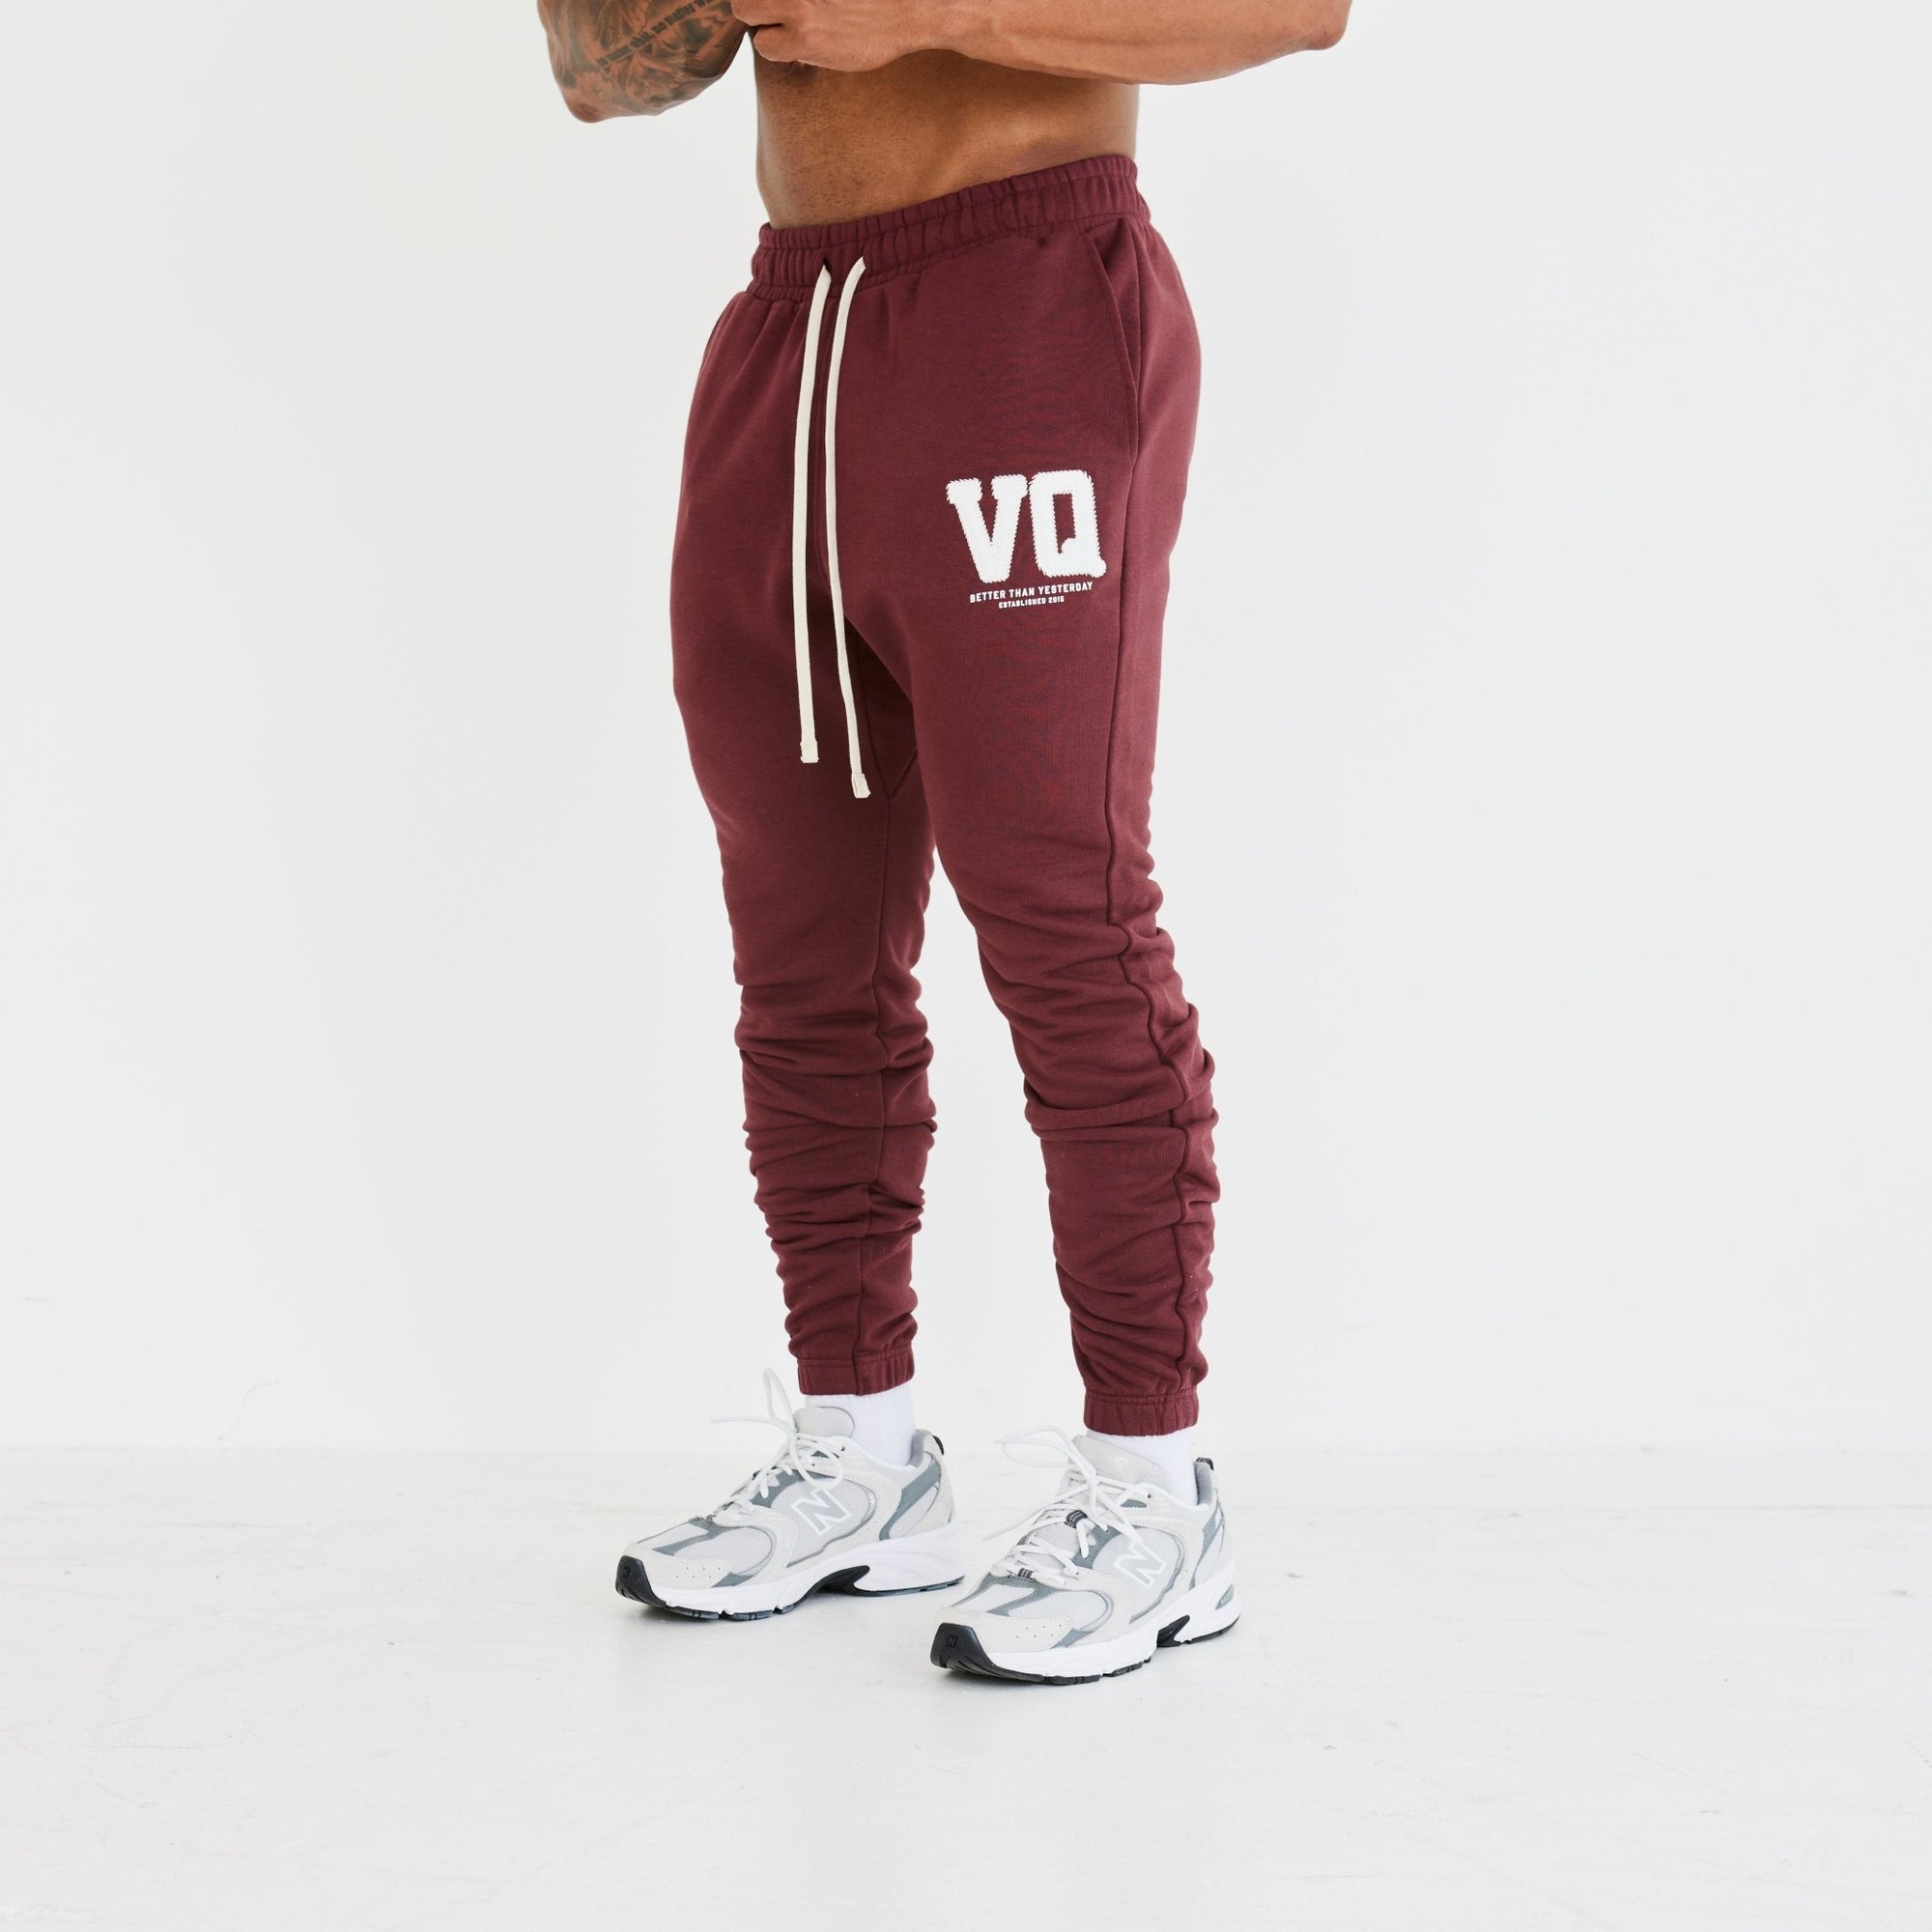 Vanquish Dark Burgundy Varsity Tapered Sweatpants - Vanquish Fitness